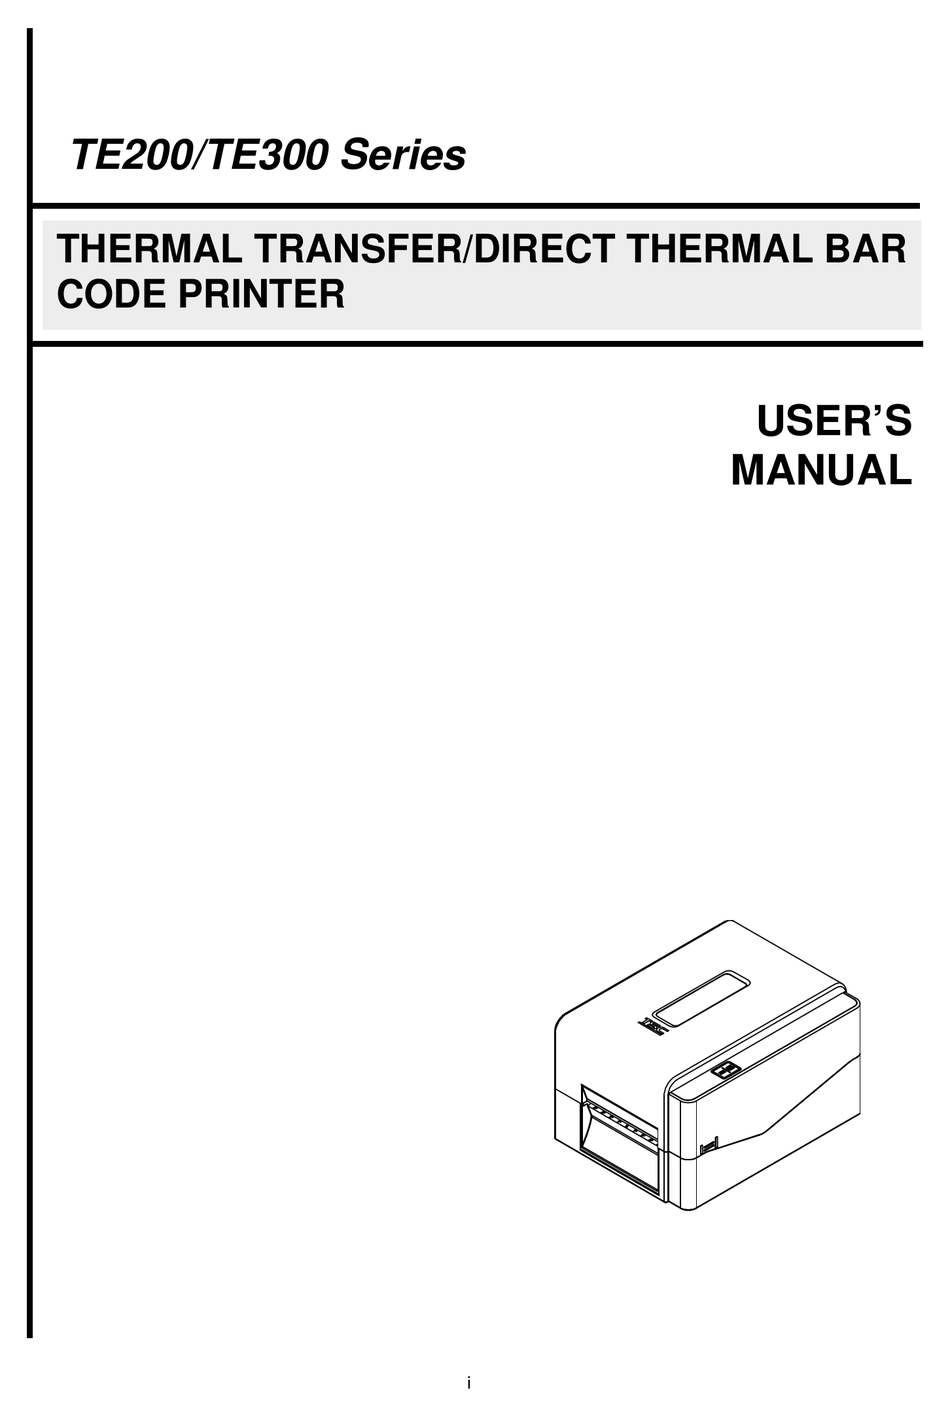 darktable user manual pdf